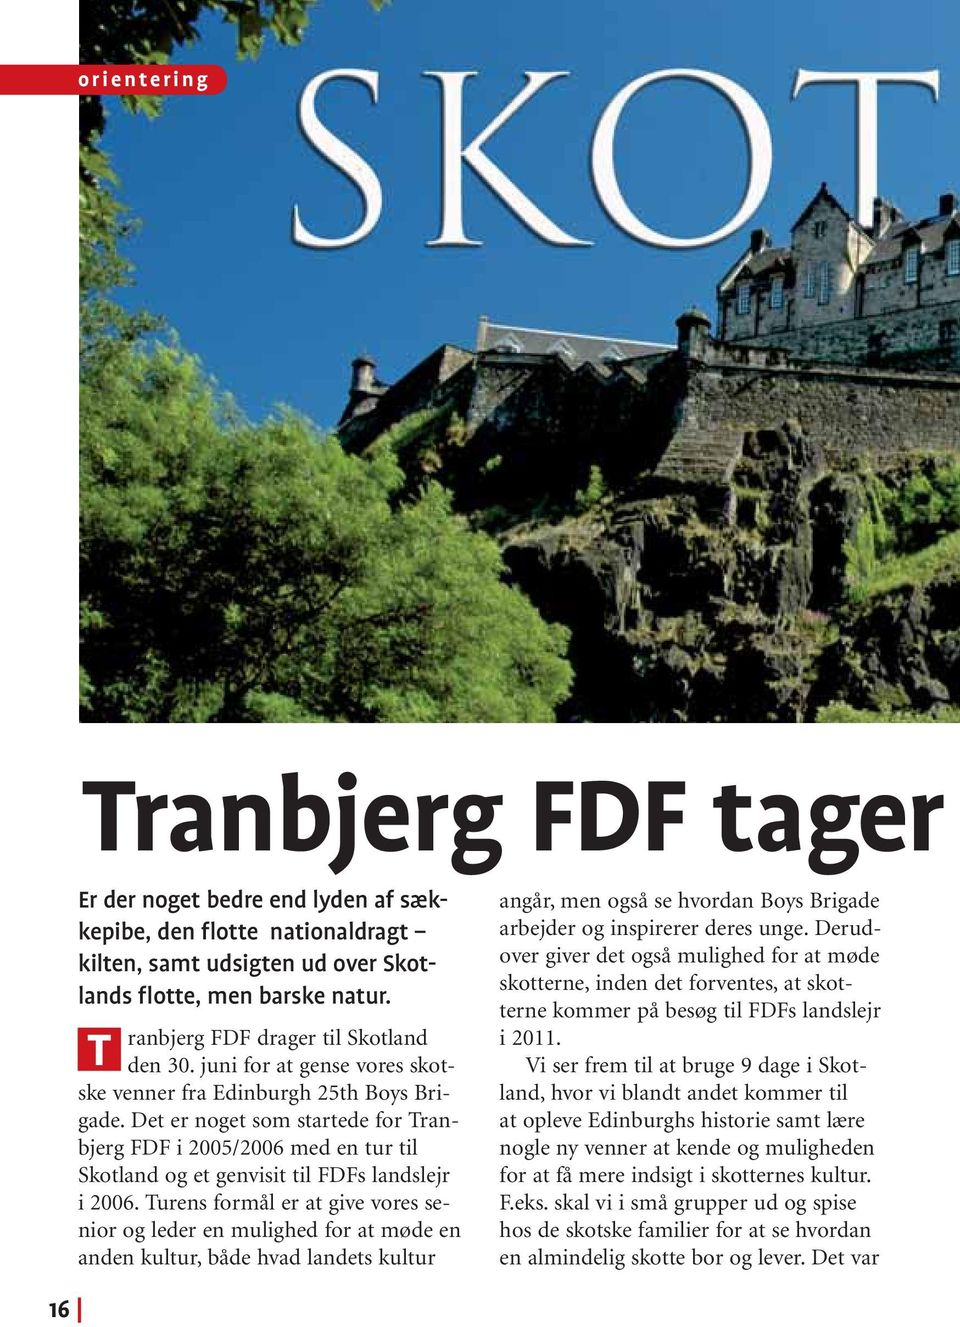 Det er noget som startede for Tranbjerg FDF i 2005/2006 med en tur til Skotland og et genvisit til FDFs landslejr i 2006.